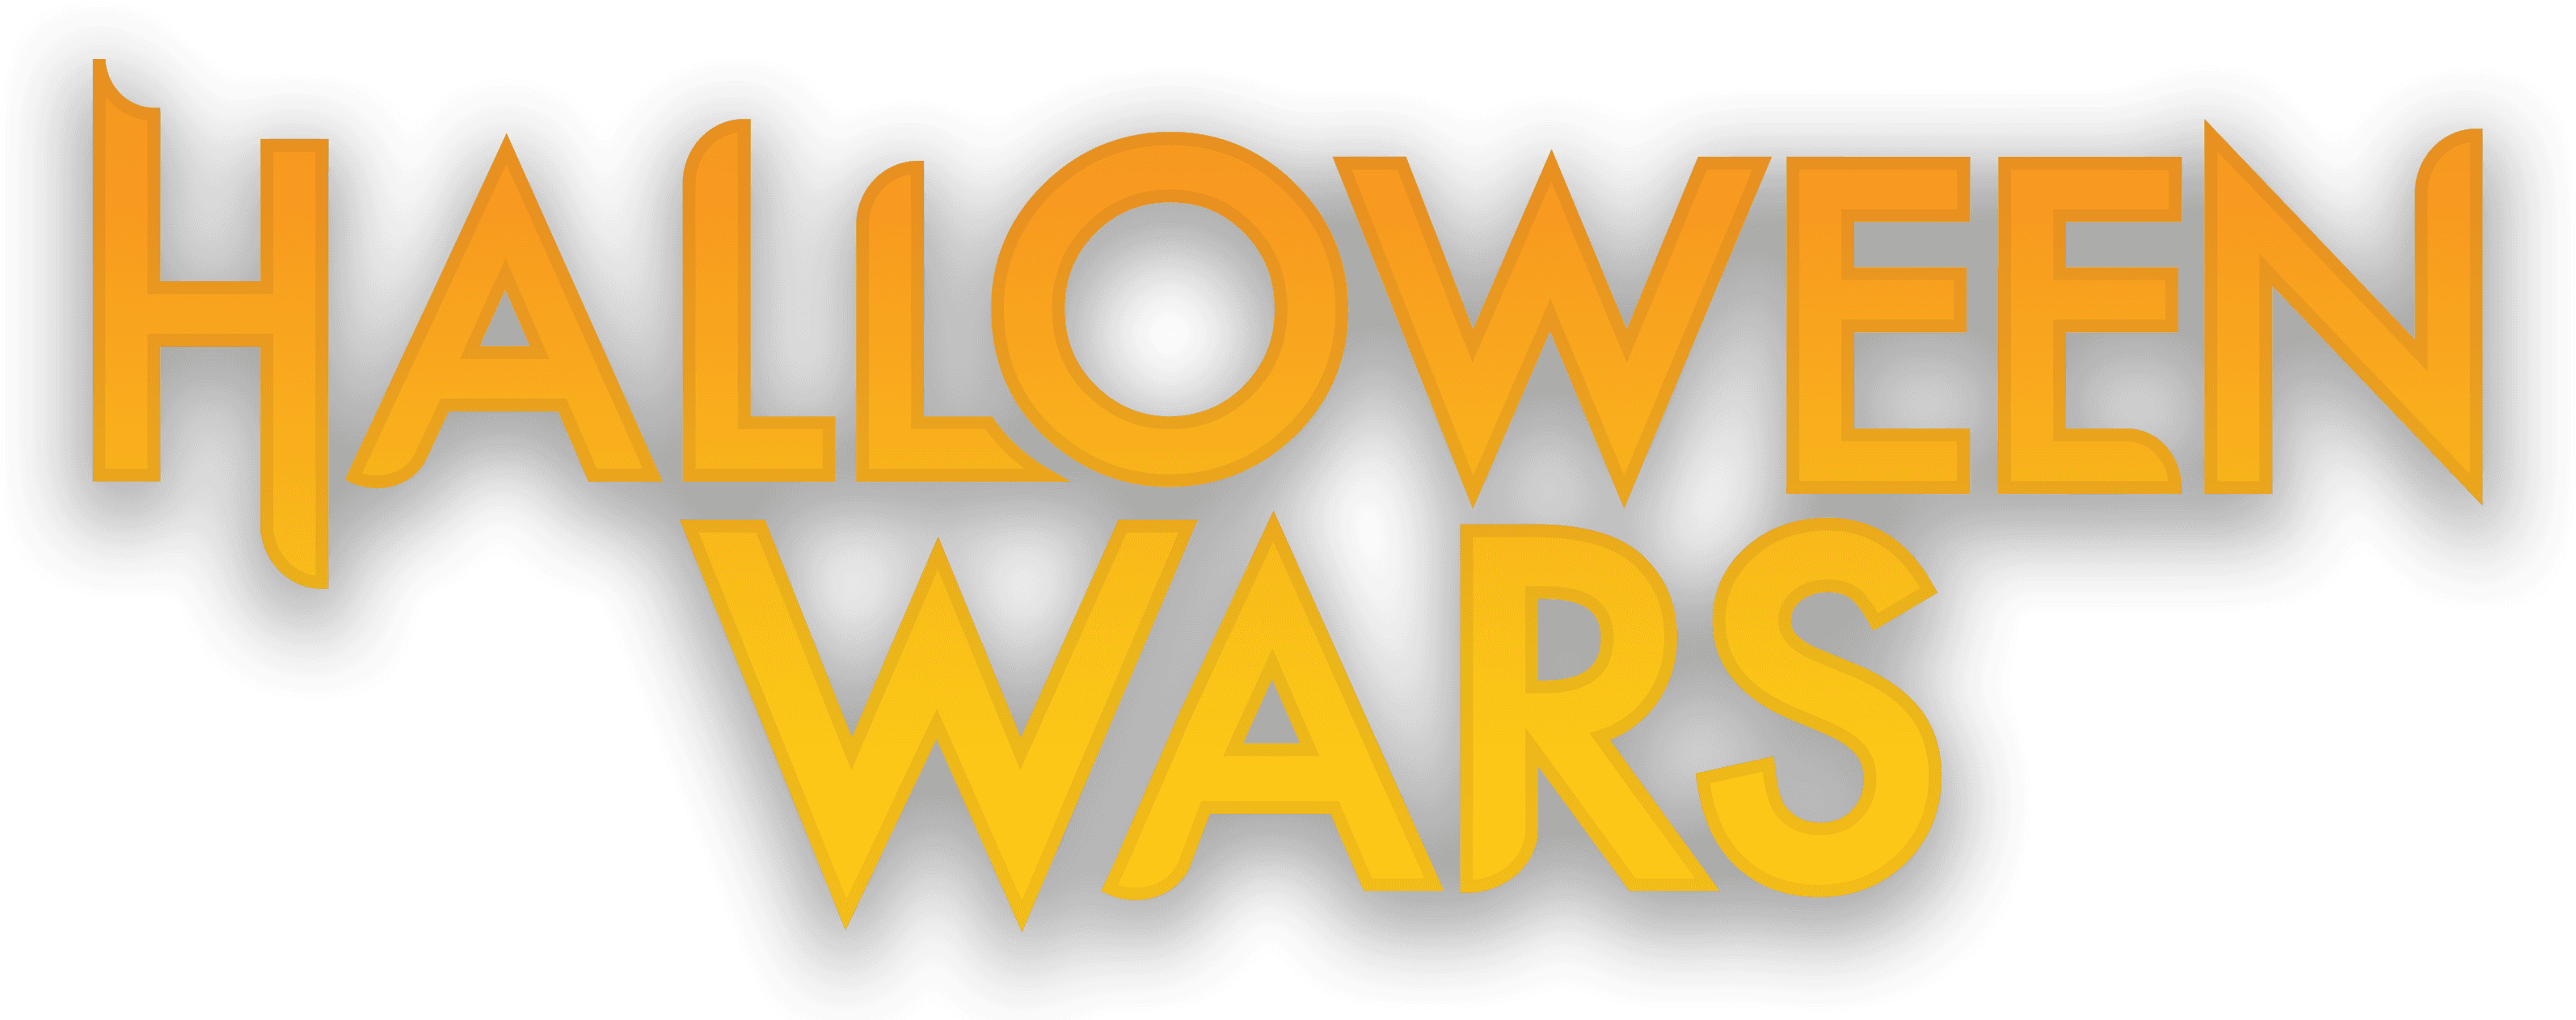 Halloween Wars logo